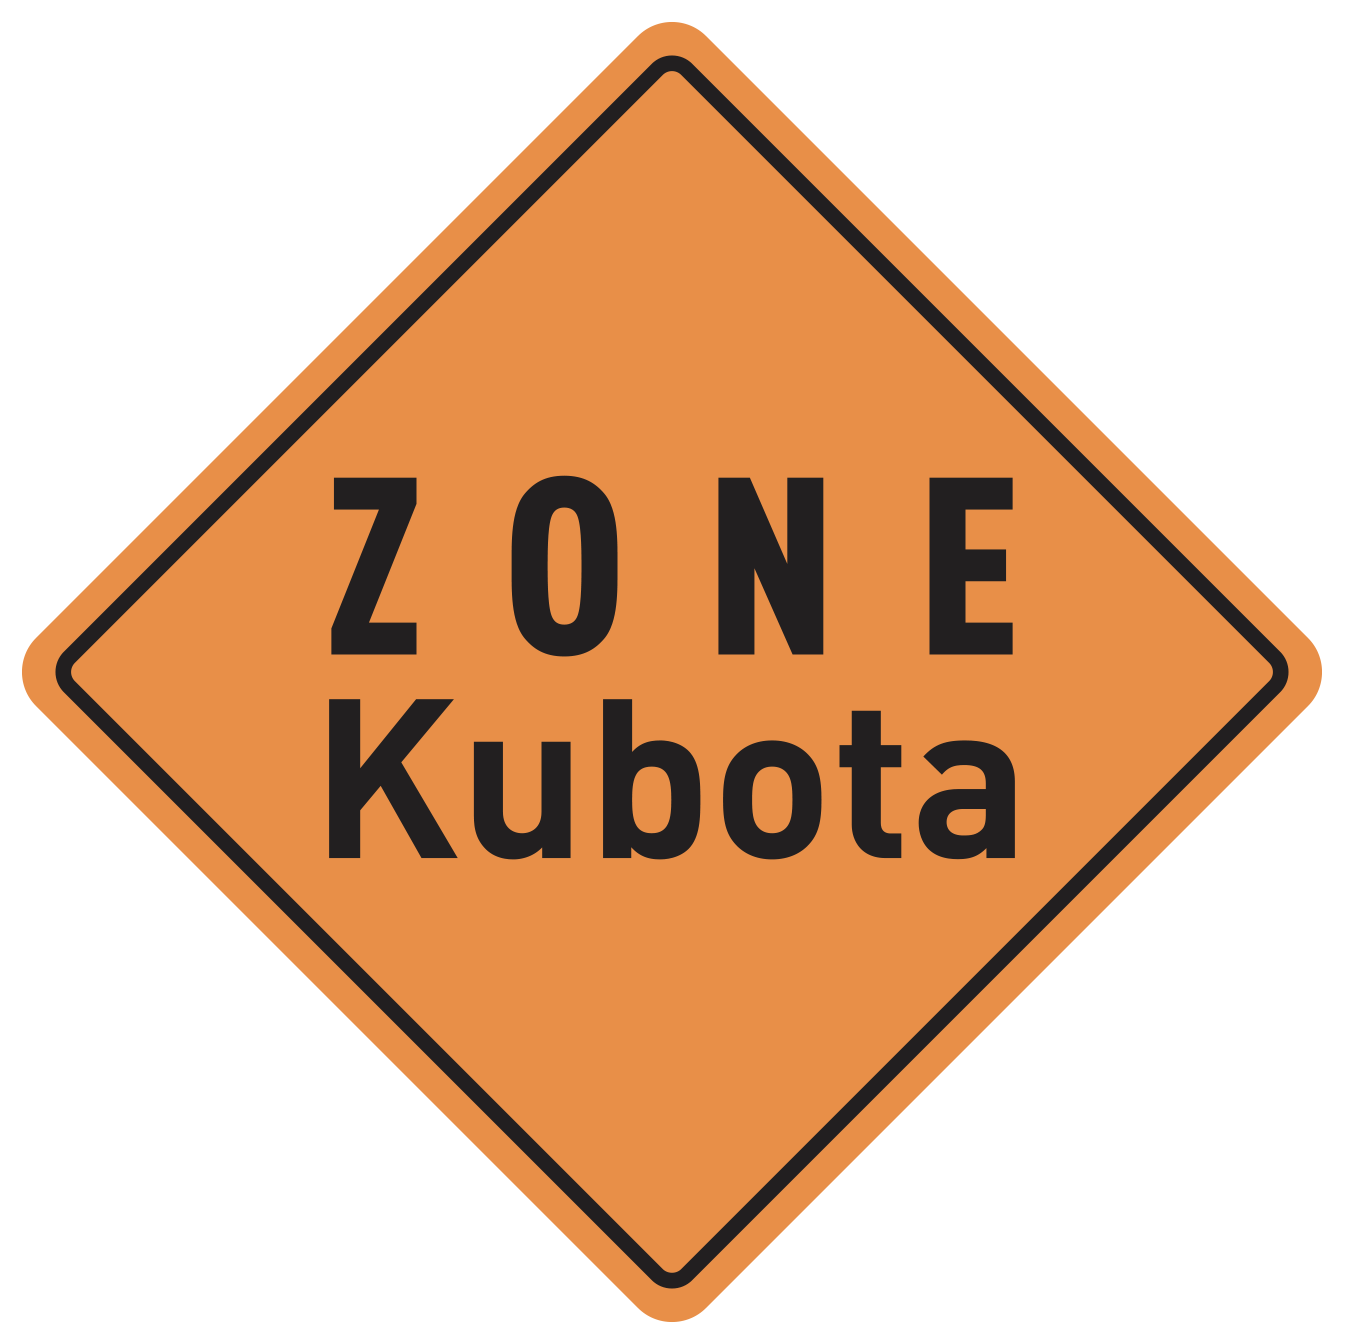 Zone Kubota